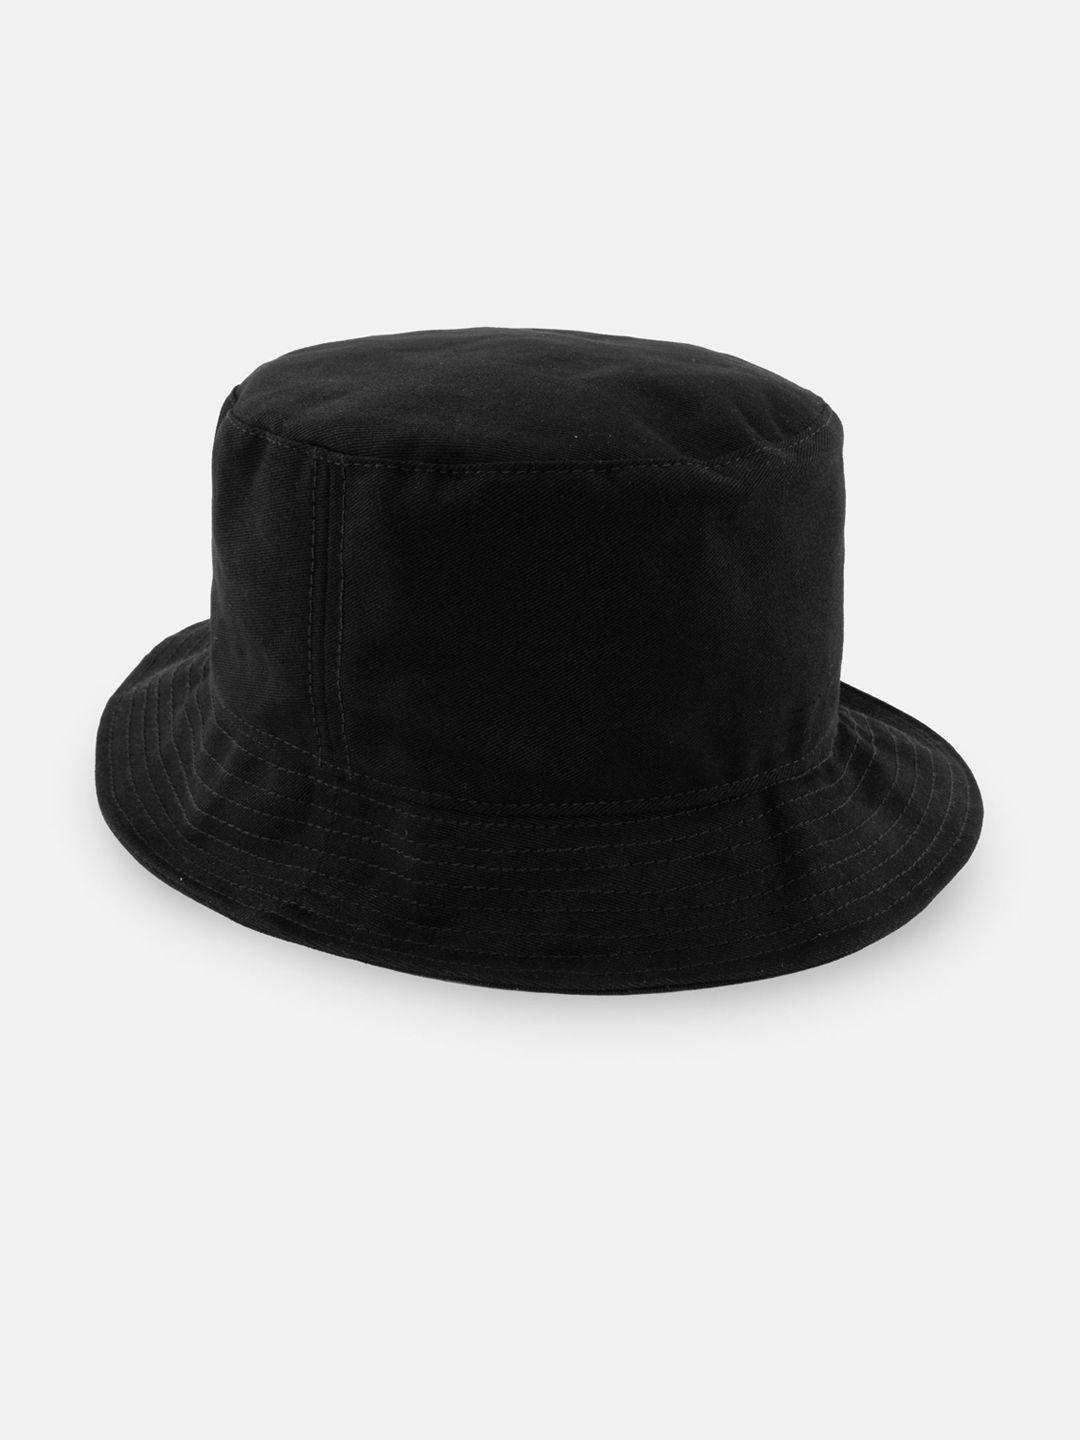 status quo men black solid bucket hat